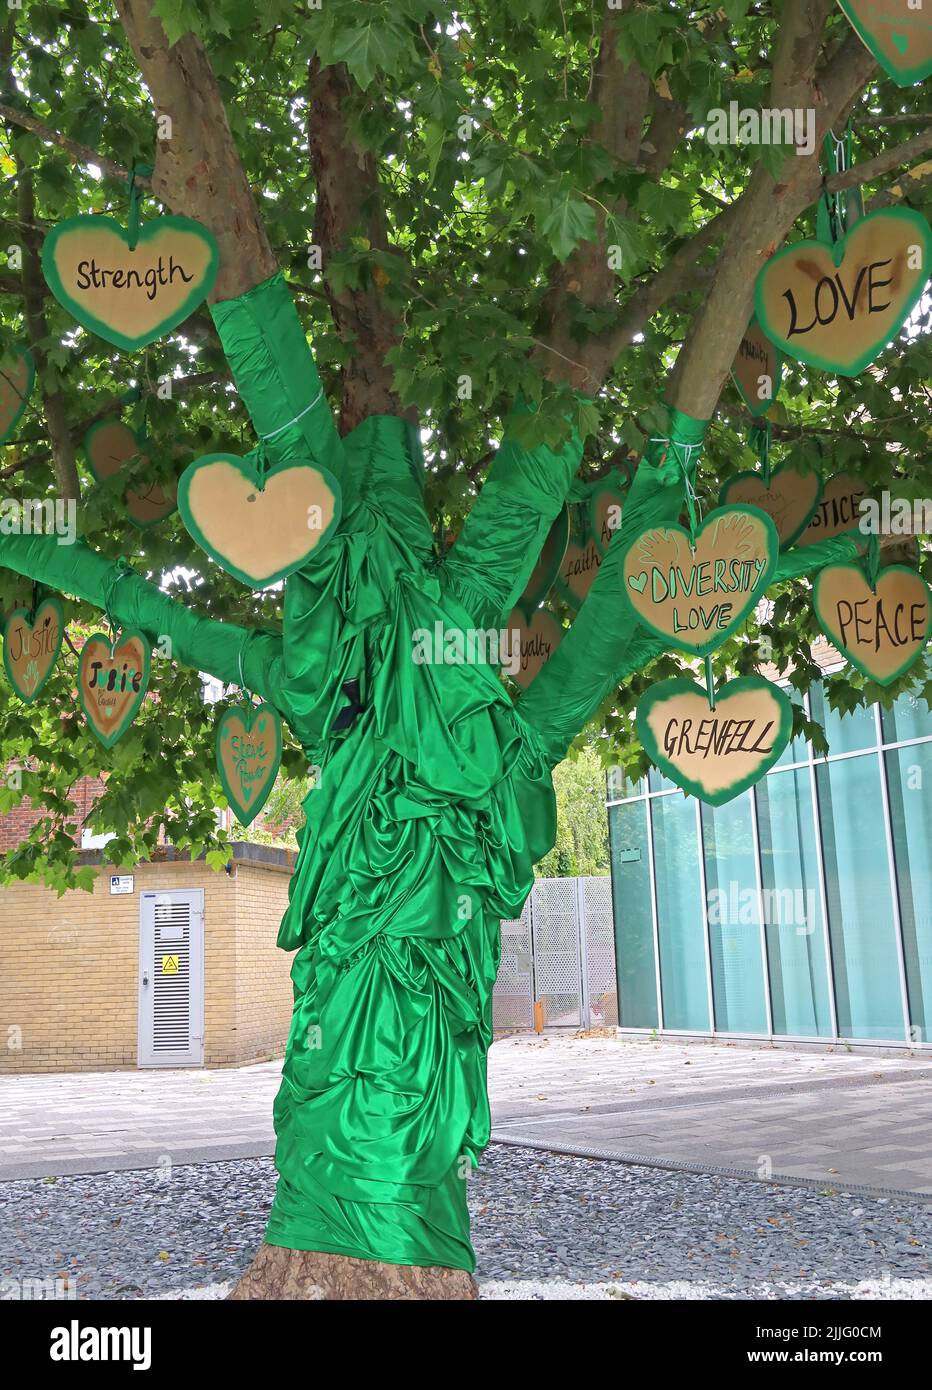 Grenfell Feuerdenkmal, grüner Baum der Herzen und Botschaften, grün für Grenfell, außerhalb des North Kensington Freizeitzentrums, London, England Stockfoto